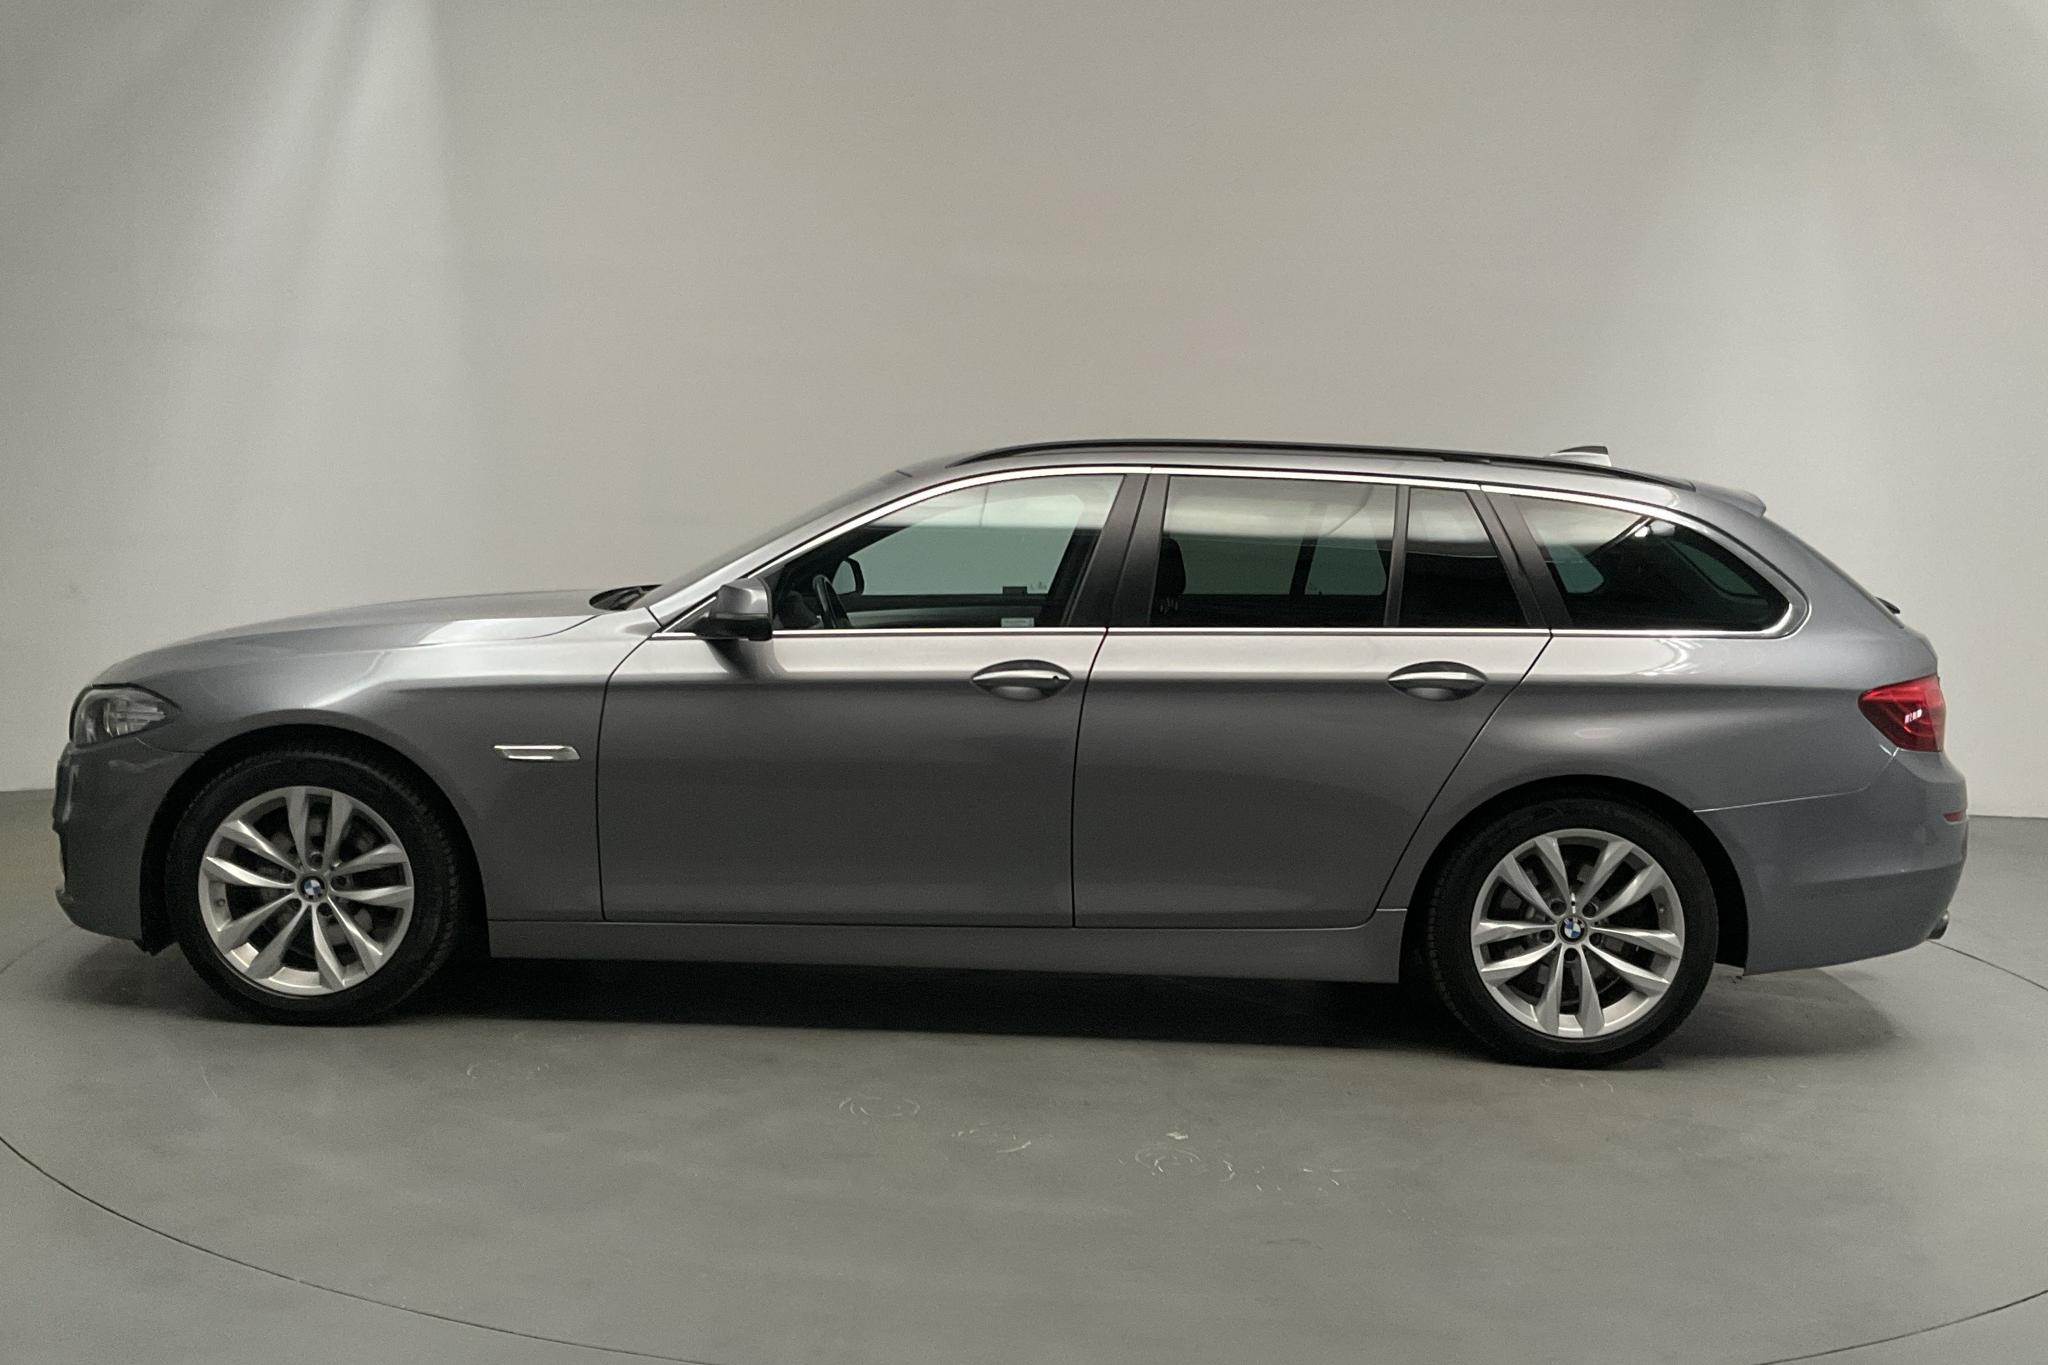 BMW 520d xDrive Touring, F11 (190hk) - 119 730 km - Automatic - gray - 2016